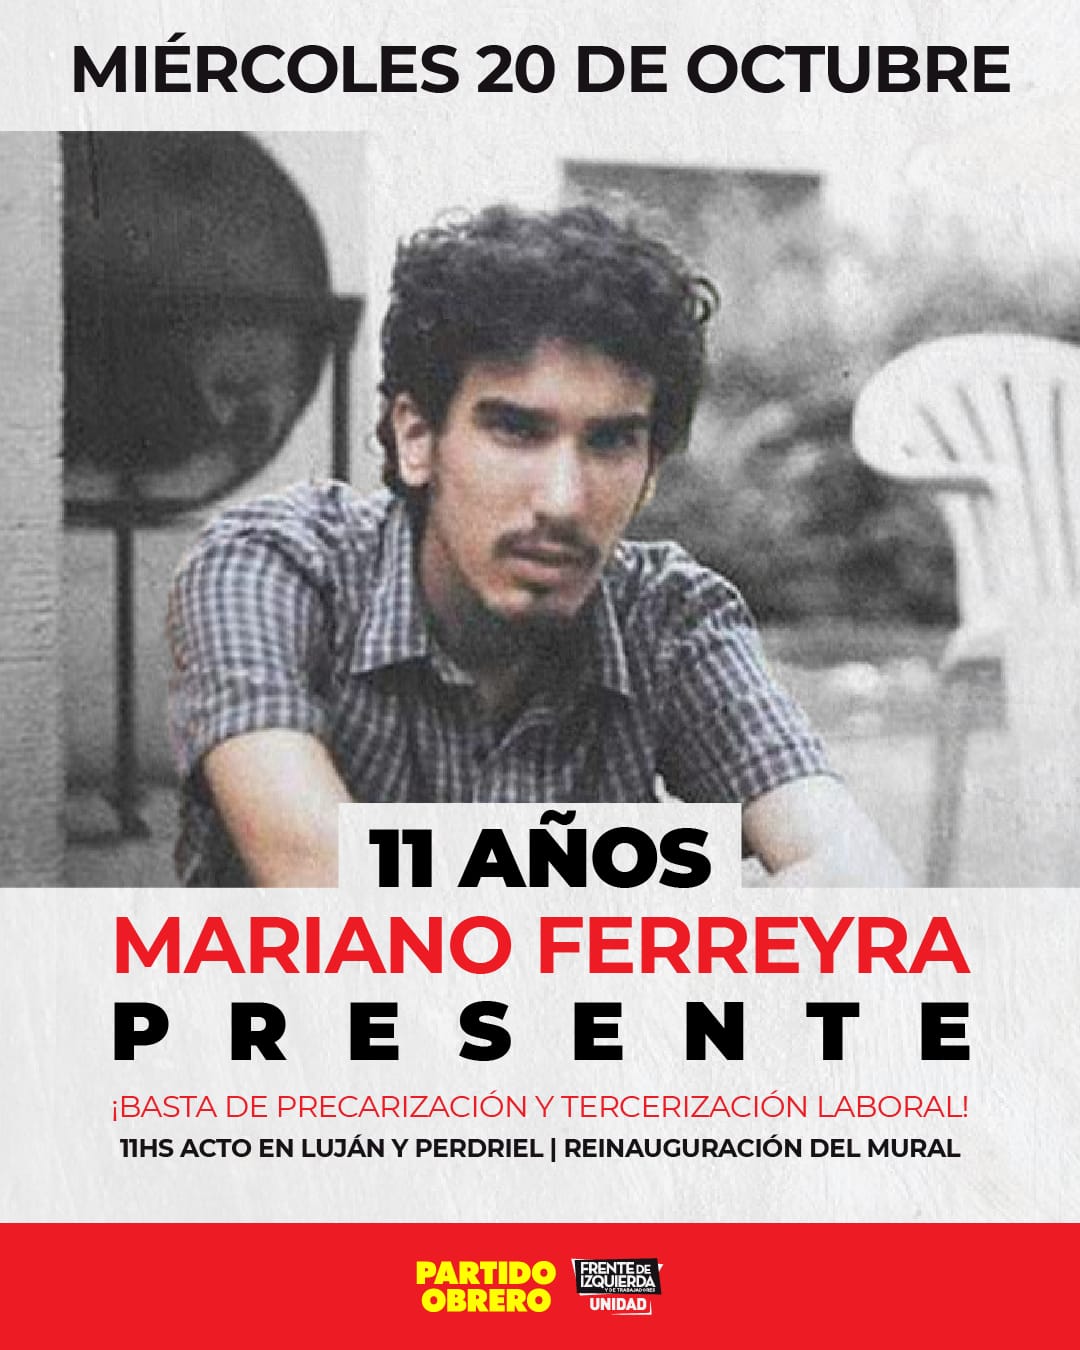 Miércoles 11h en Luján y Perdriel, acto a 11 años del asesinato de Mariano Ferreyra